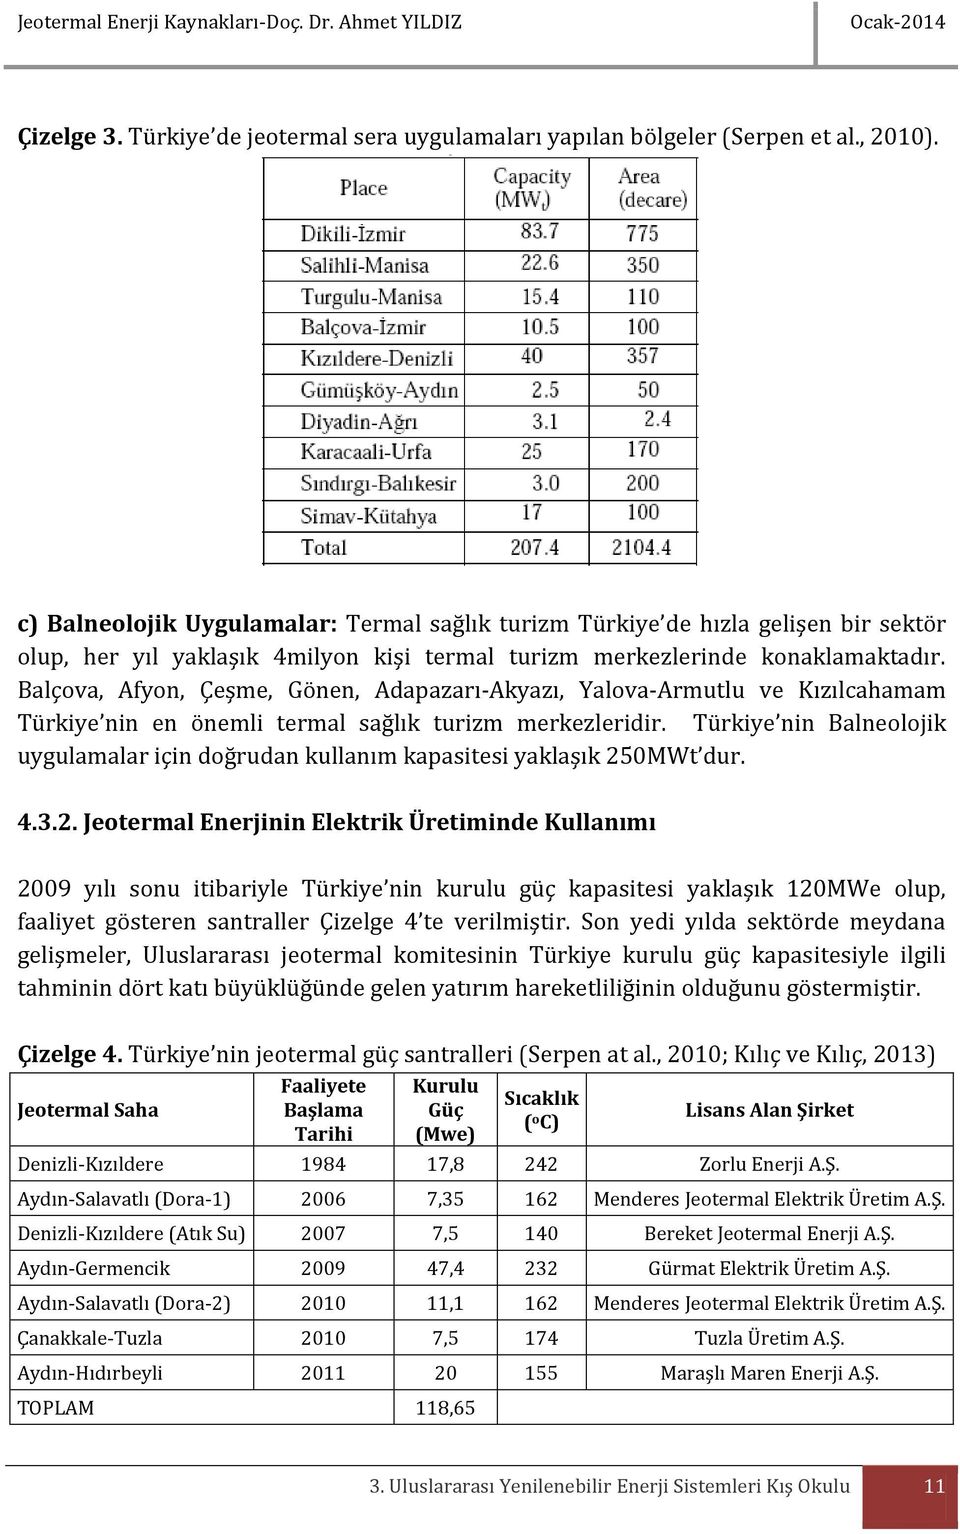 Balçova, Afyon, Çeşme, Gönen, Adapazarı-Akyazı, Yalova-Armutlu ve Kızılcahamam Türkiye nin en önemli termal sağlık turizm merkezleridir.